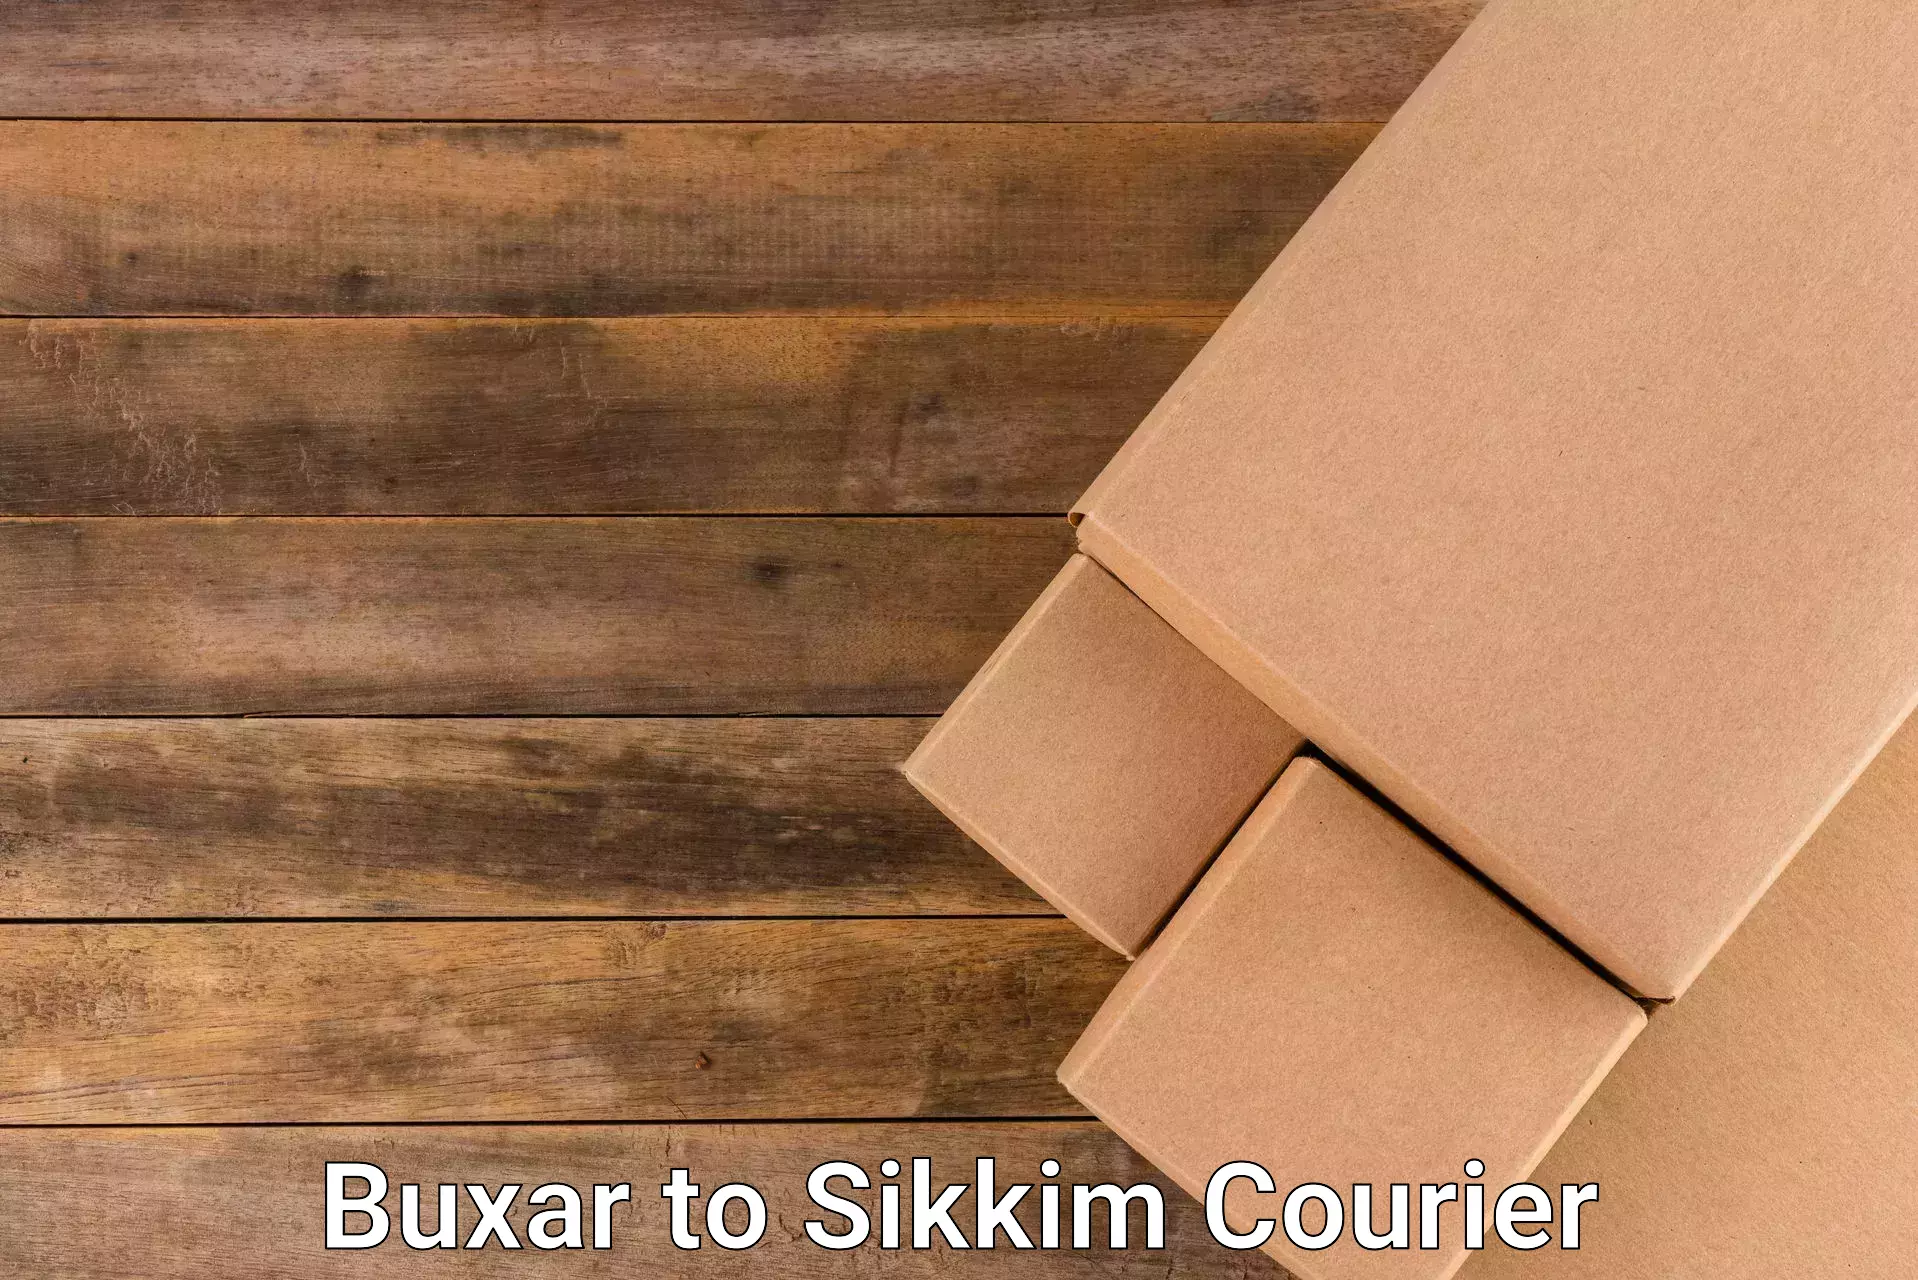 Flexible parcel services Buxar to South Sikkim